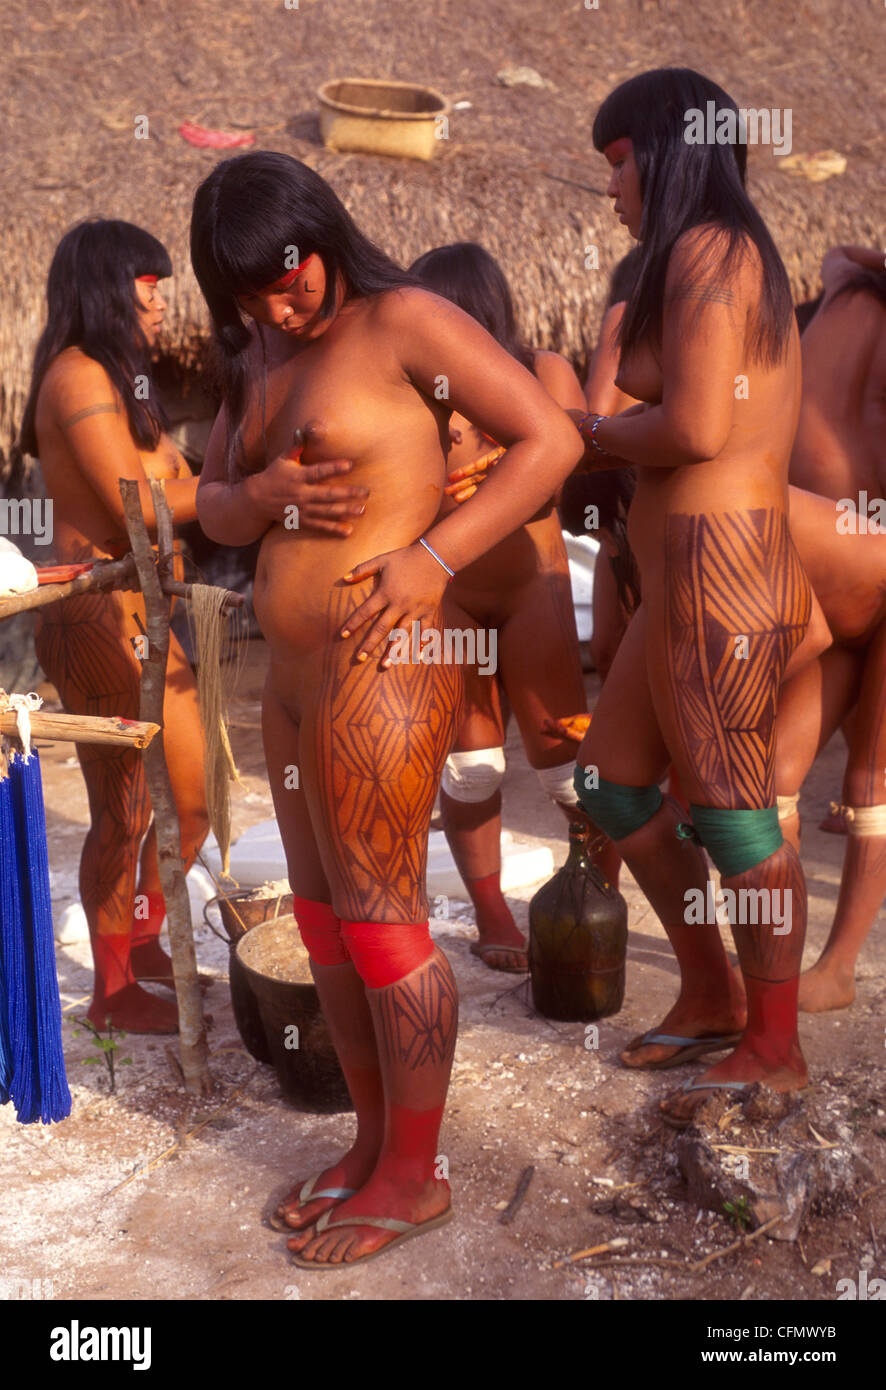 Настоящий секс африканских племен - лучшее порно видео на поддоноптом.рф